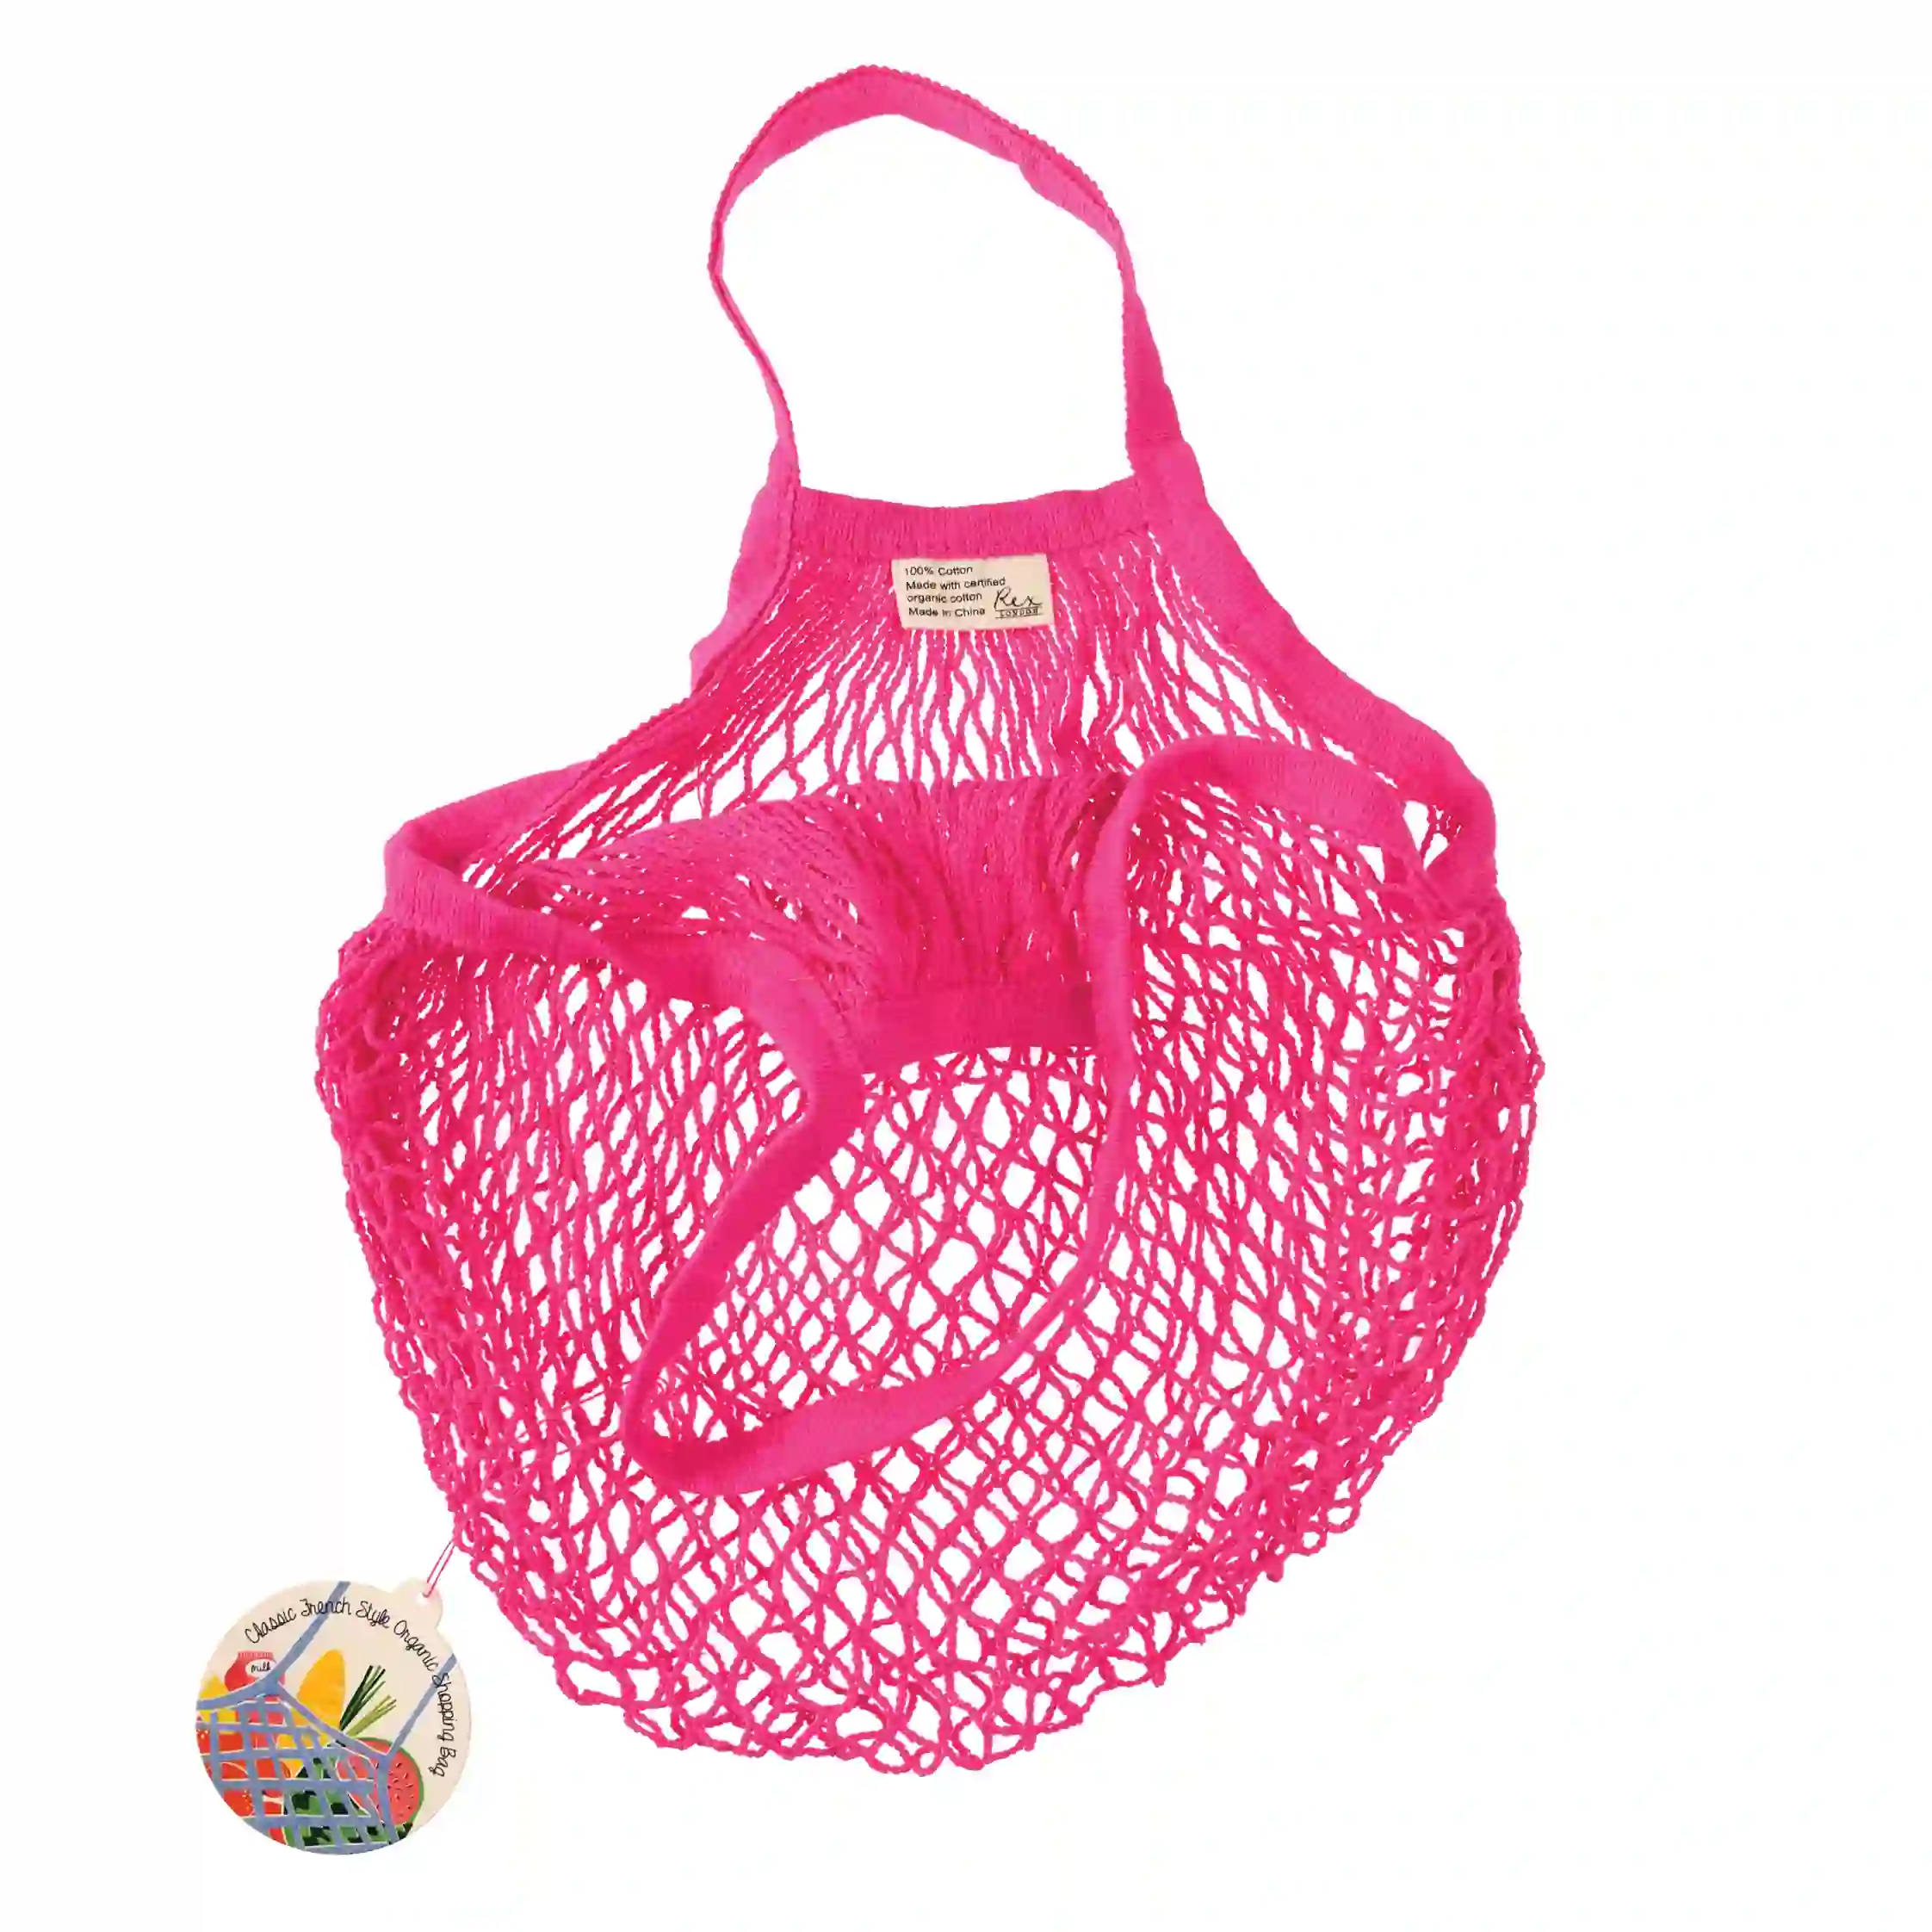 netzeinkaufstasche aus biobaumwolle in pink